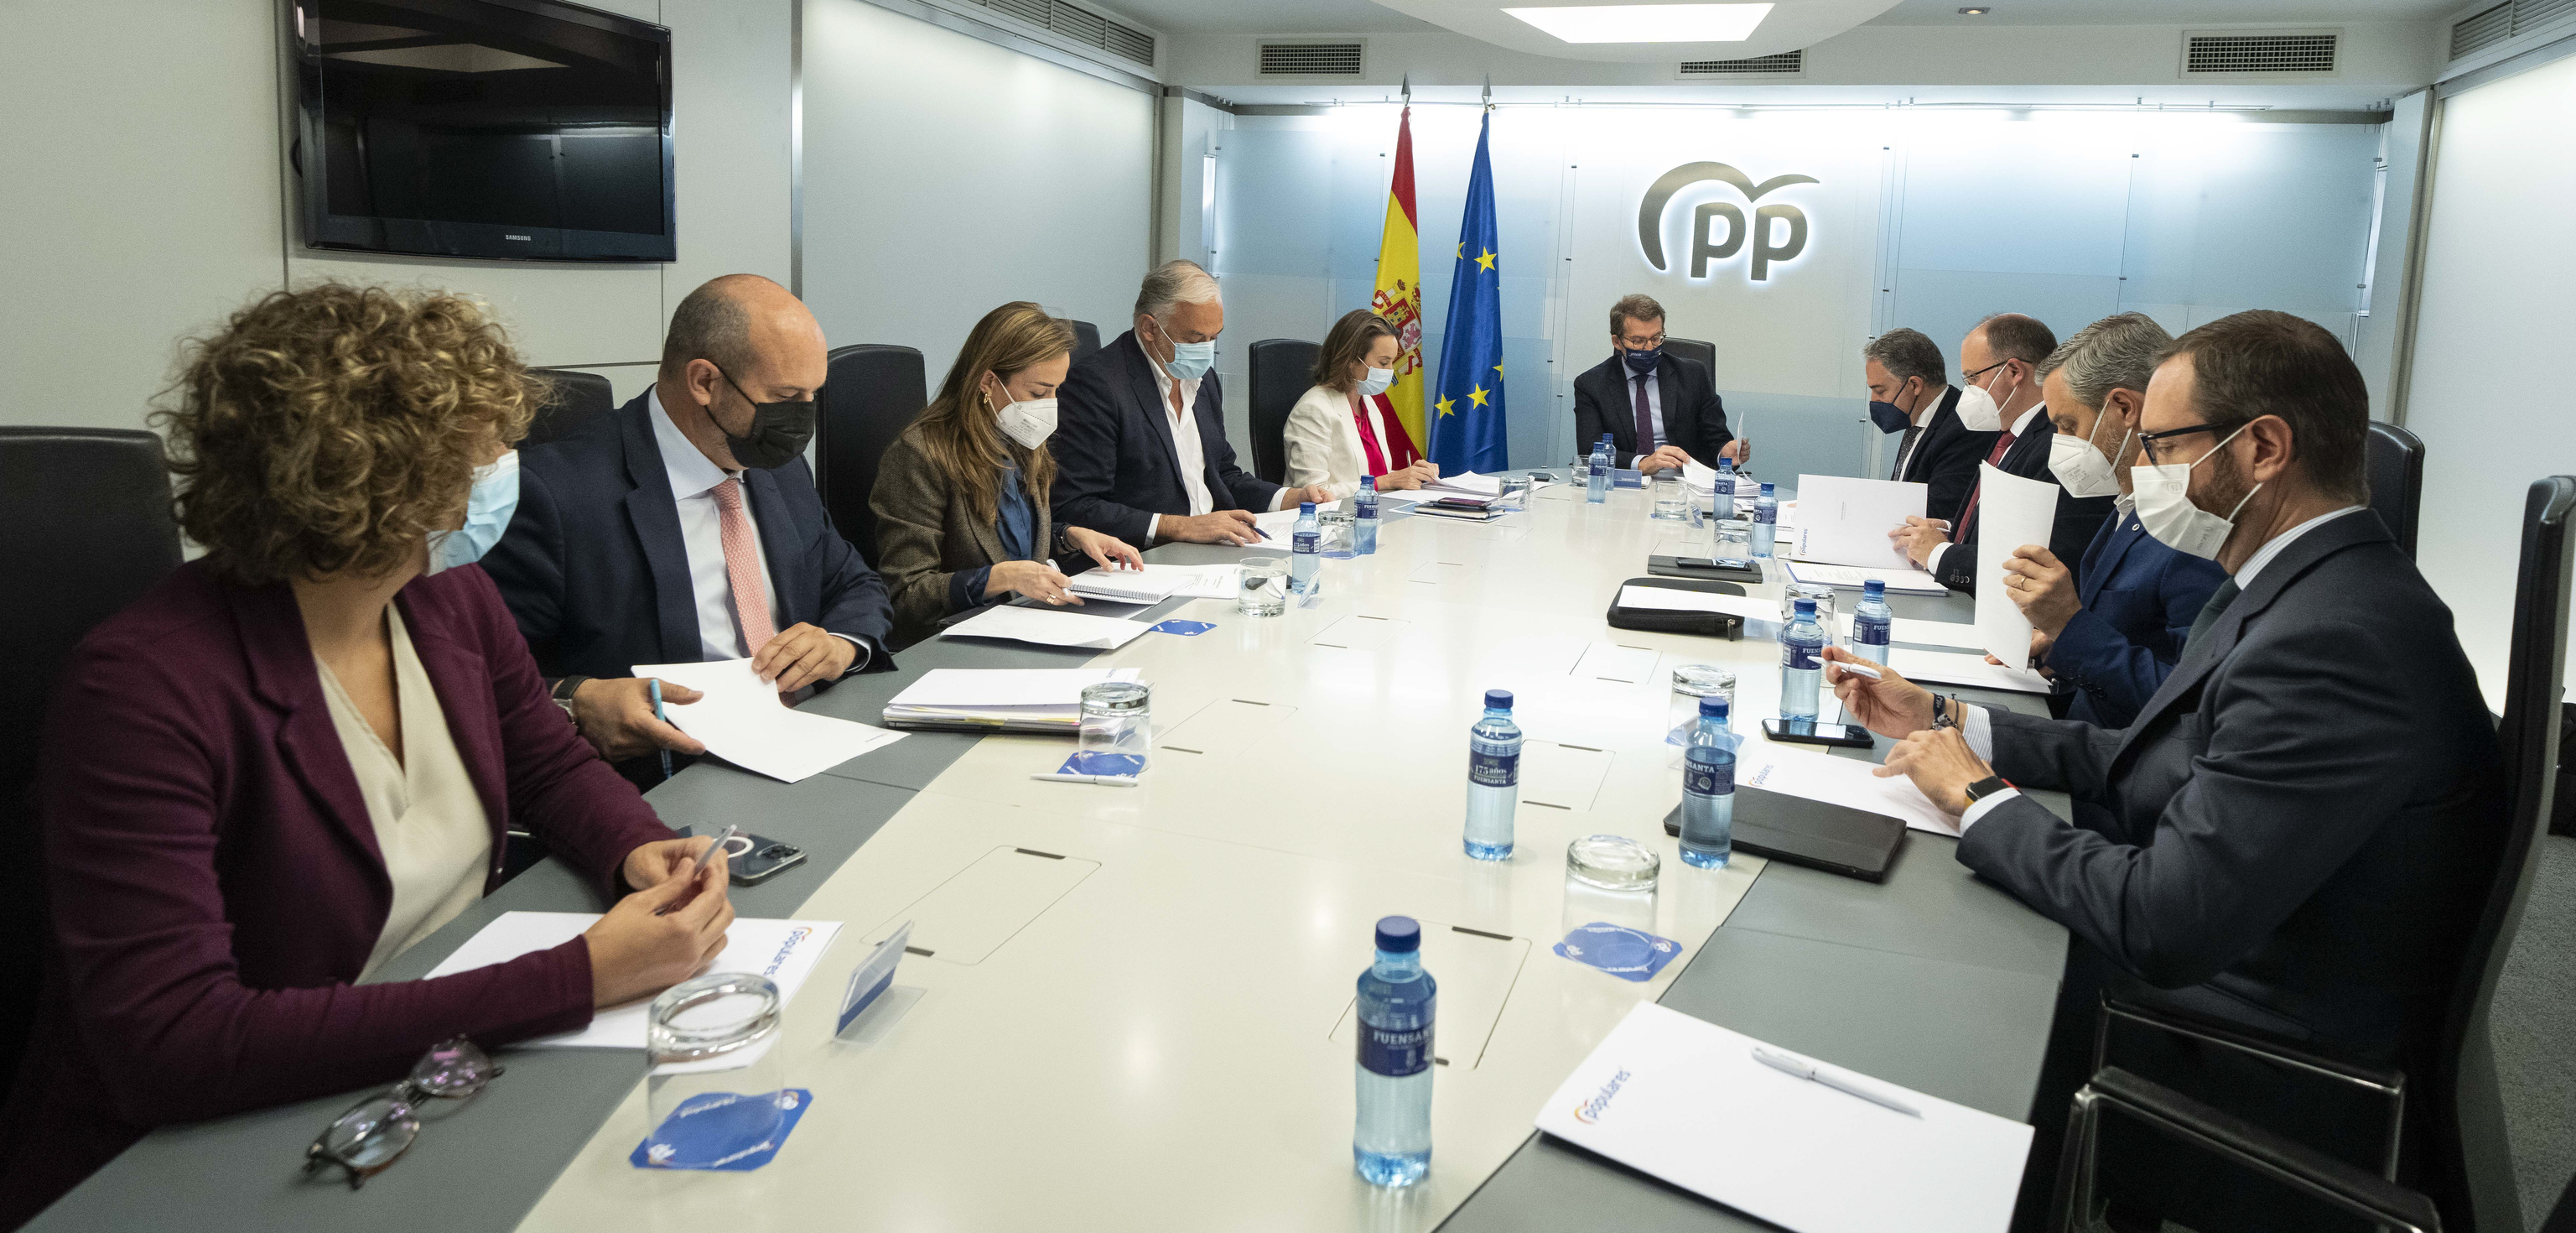 El plan del PP  para adaptar el IRPF a la inflación ahorra 36 euros de media y beneficia más a Madrid y Cataluña